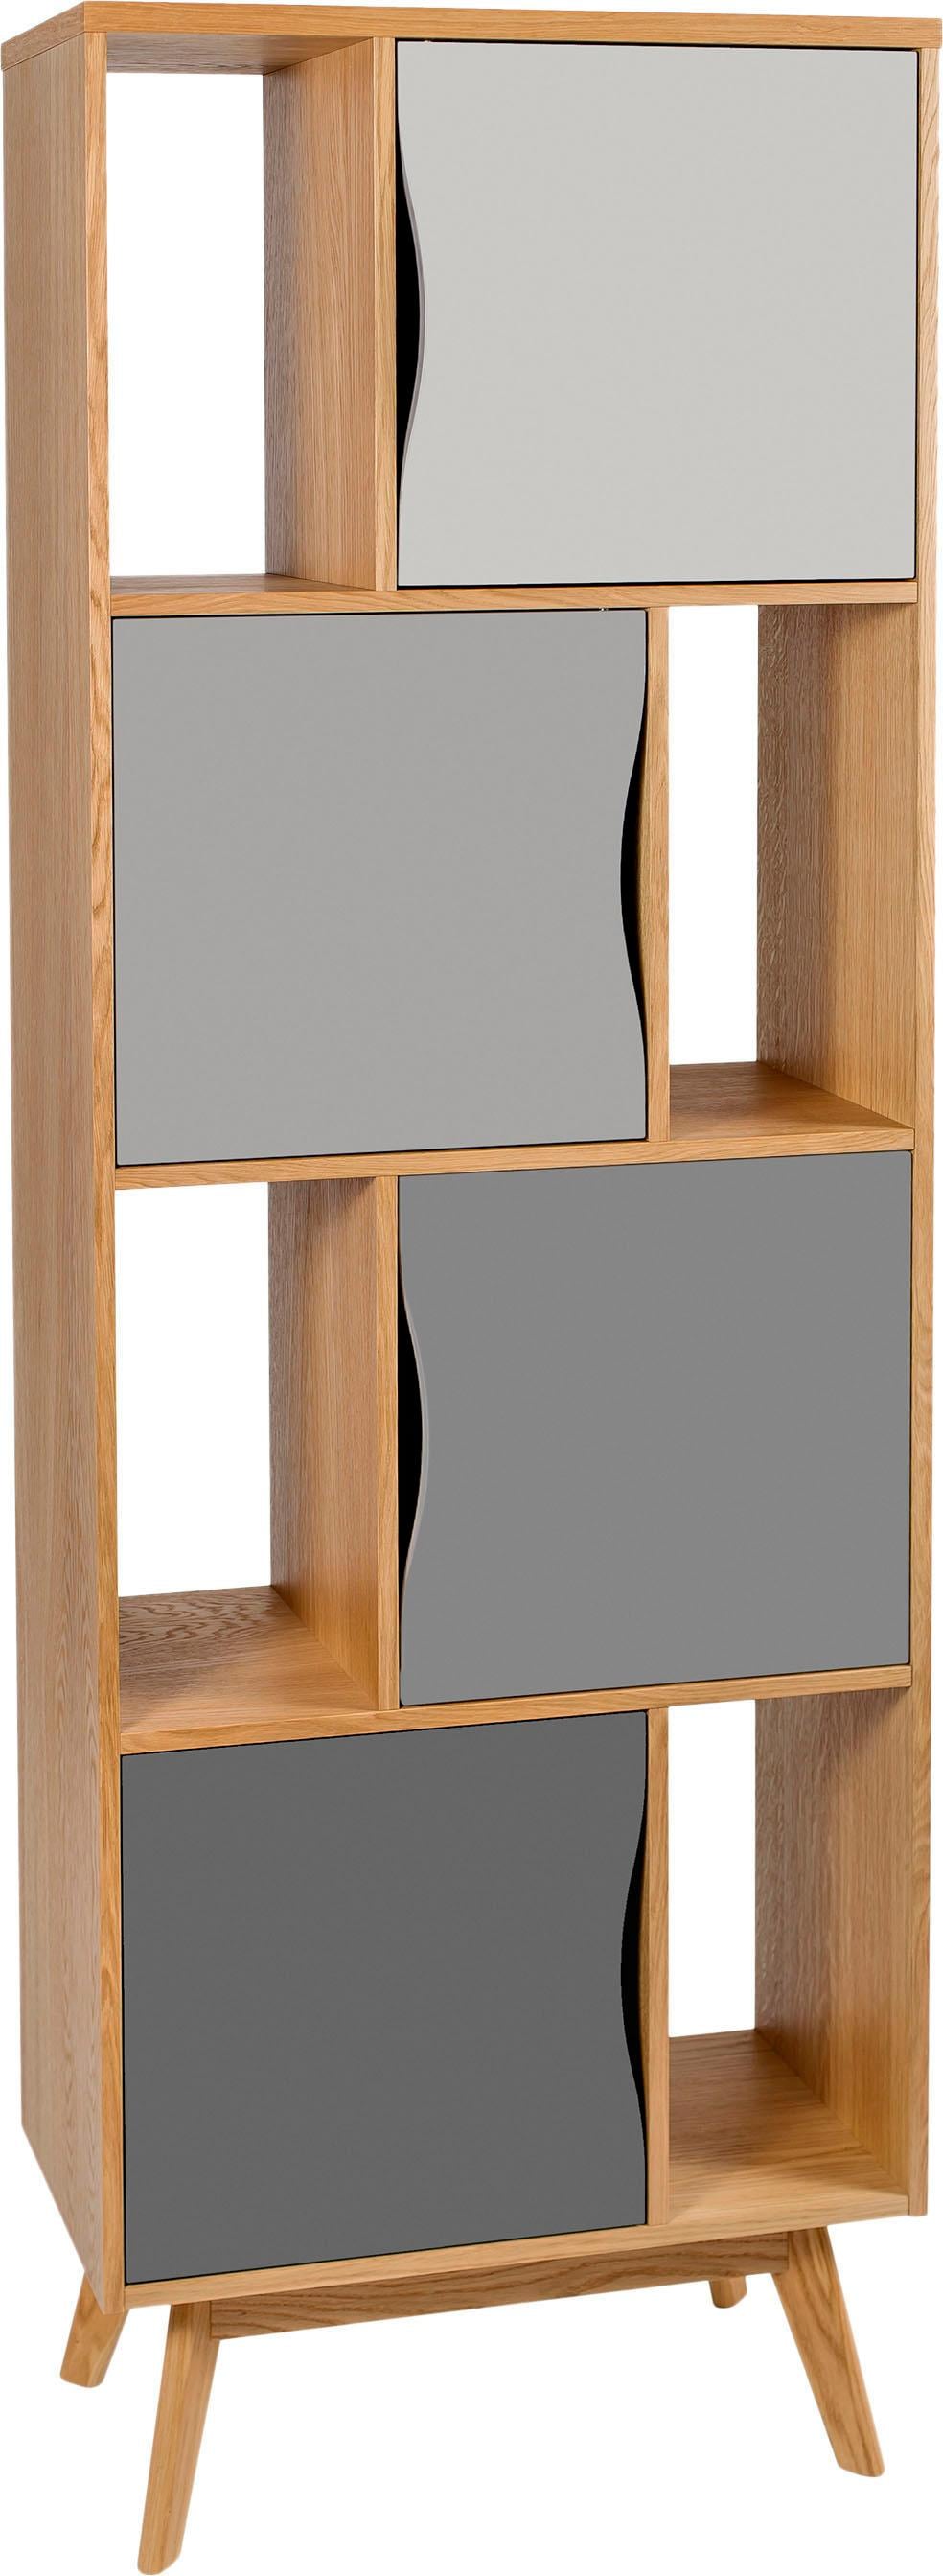 Woodman Bücherregal »Avon«, Höhe 191 cm, Holzfurnier aus Eiche, schlichtes skandinavisches Design